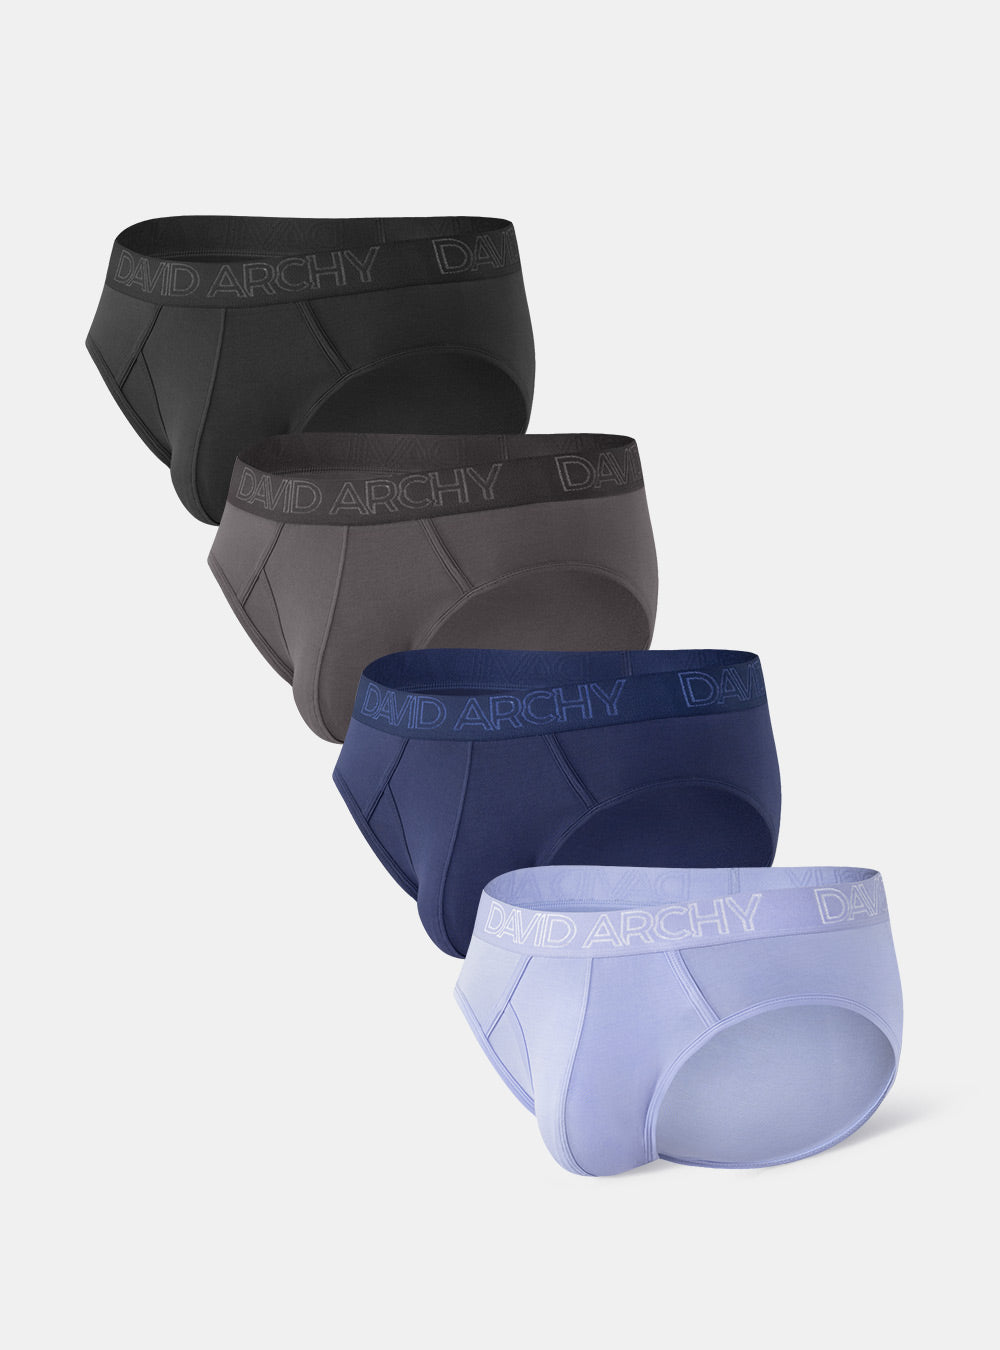 Spanx Super Higher Power Brief Black - Brief - Briefs - Underwear -  Timarco.co.uk